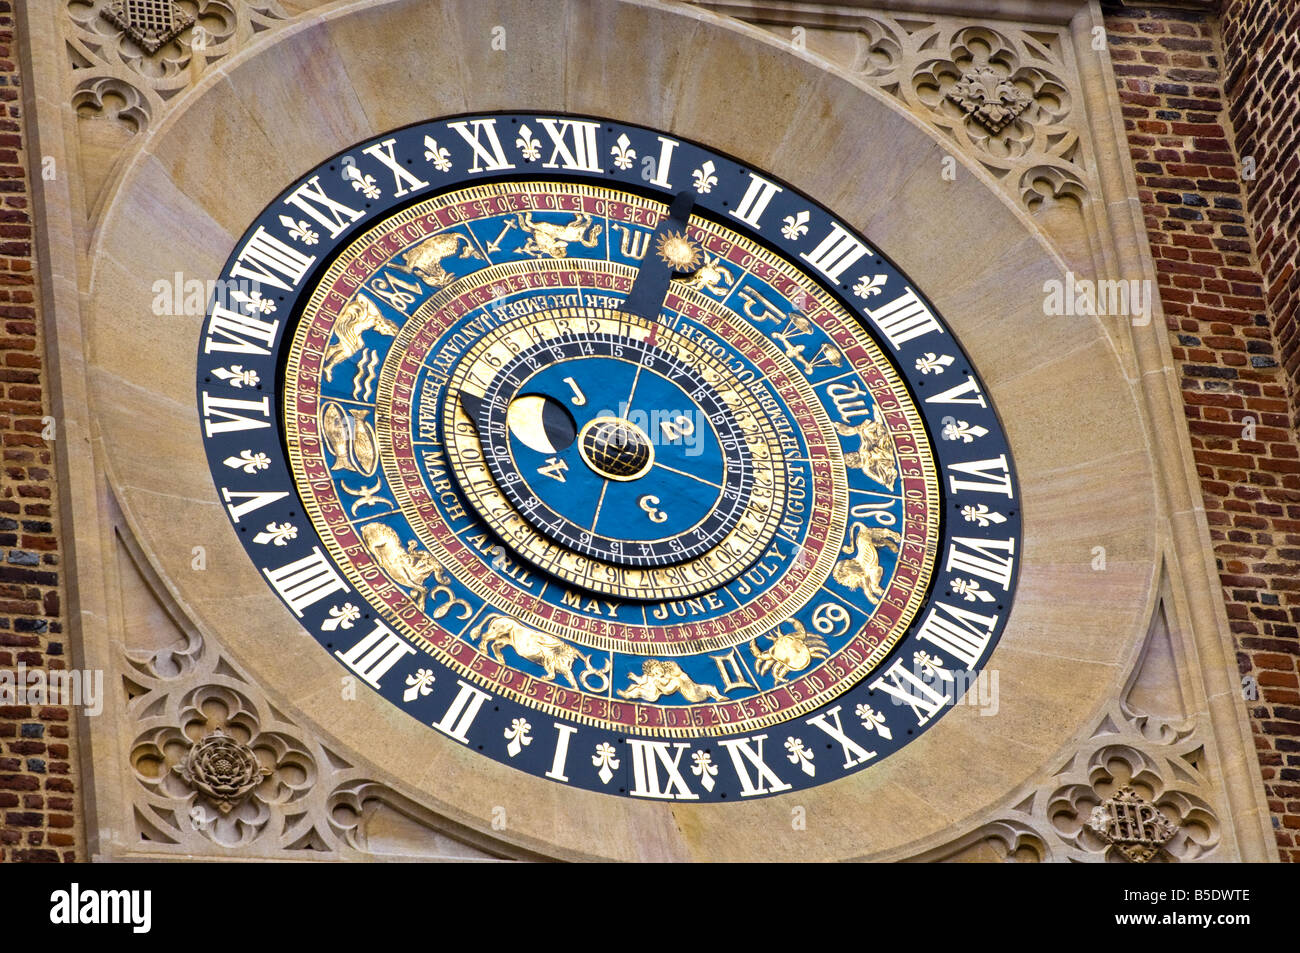 Die berühmten späten mittelalterliche astronomische Uhr am Anne Boleyn Torhaus am Hampton Court Palace Stockfoto